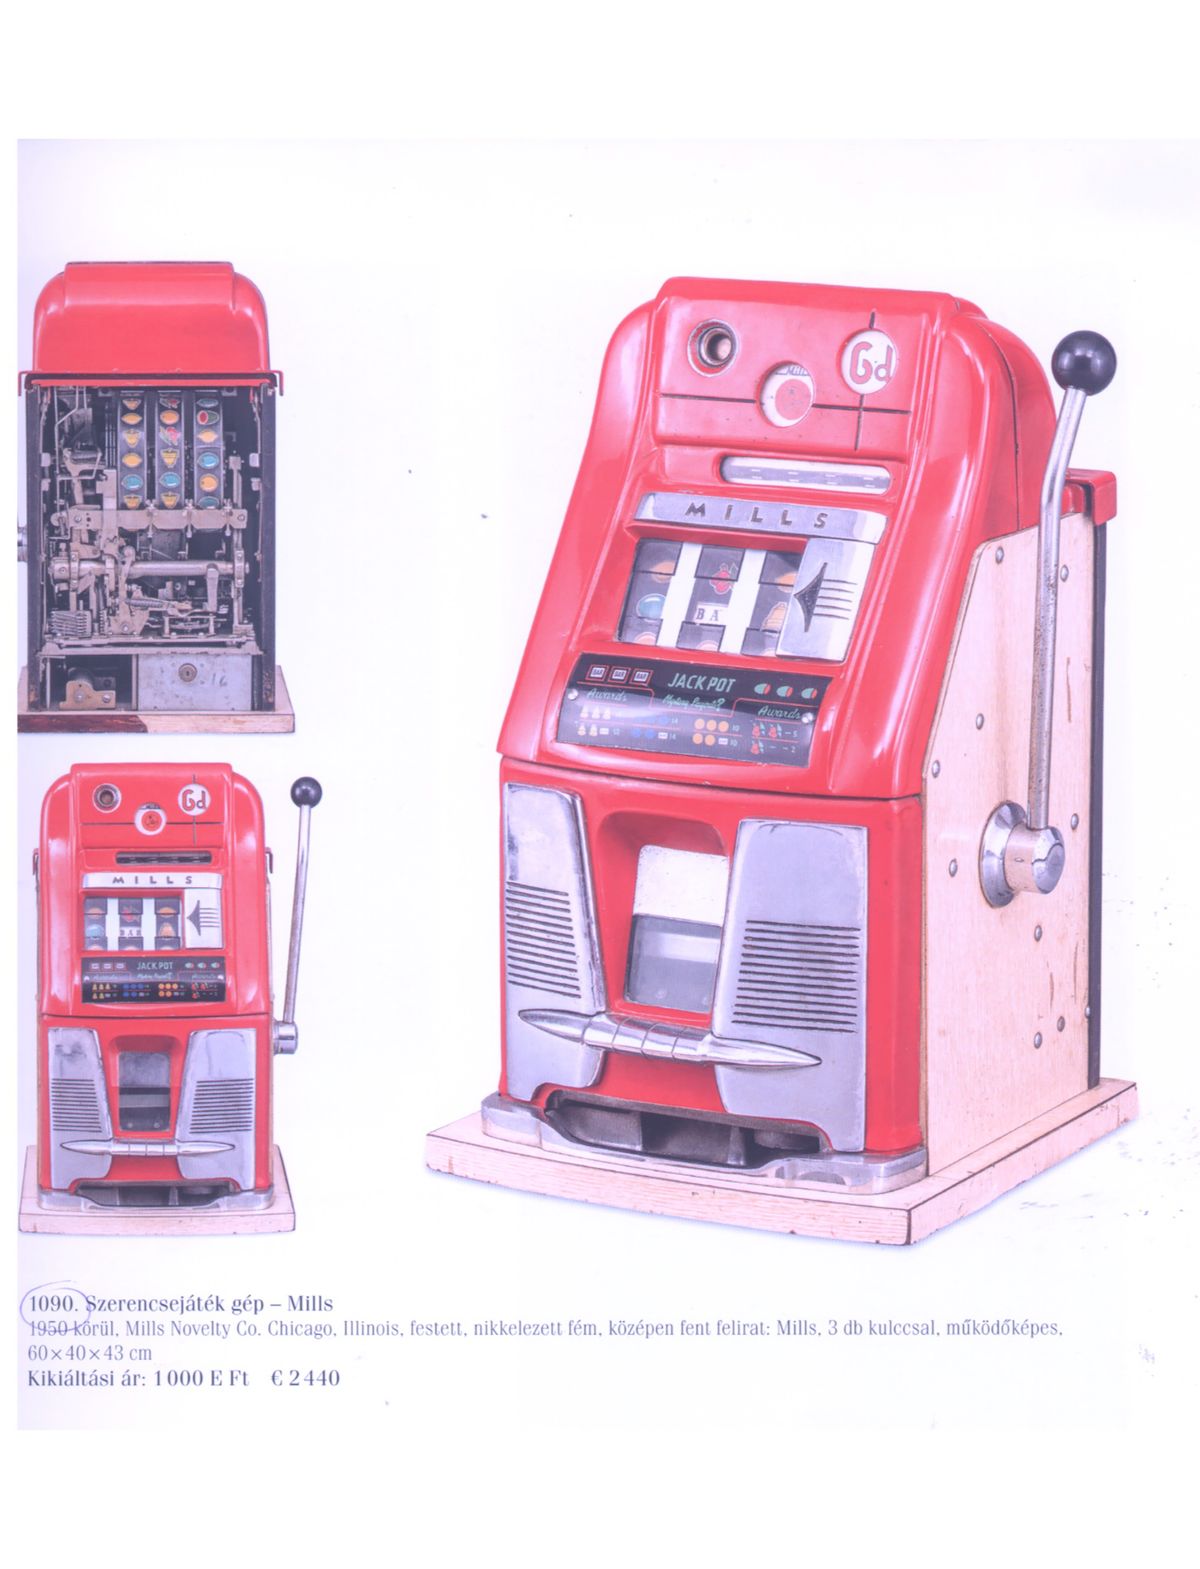 Szerencsejáték gép - Mills
1950 körül, Chicago
kikiáltási ára 1 millió ft